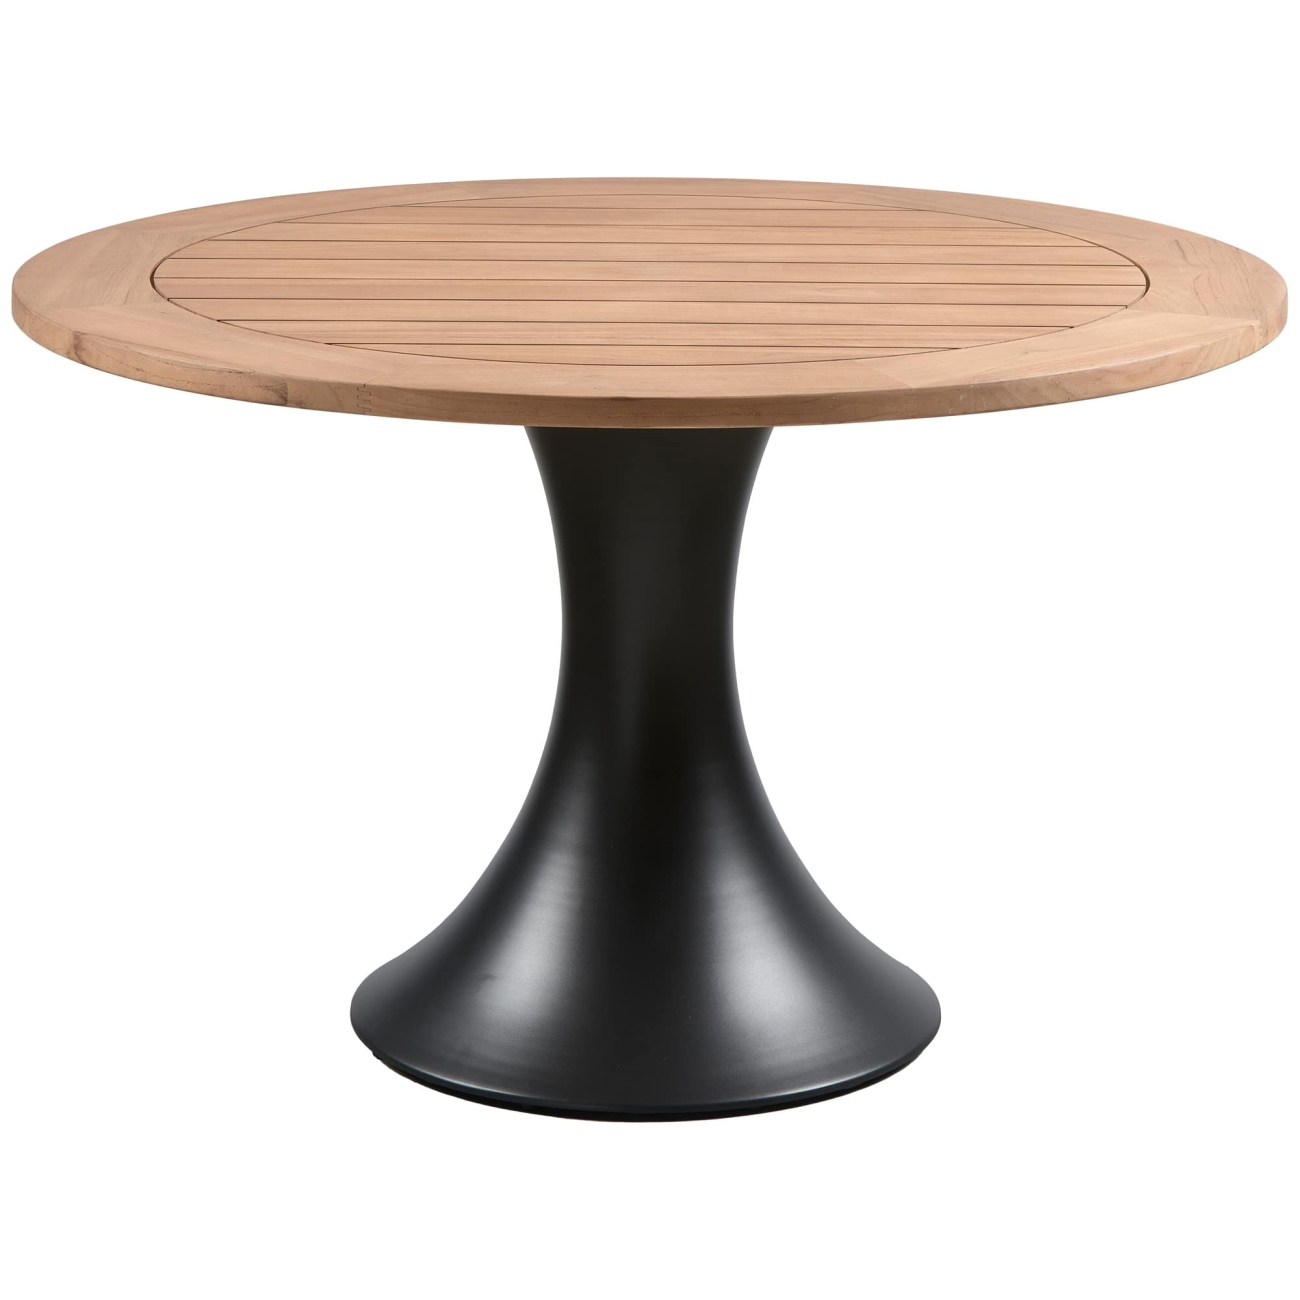 Der Gartenesstisch Charley überzeugt mit seinem modernen Design. Gefertigt wurde er aus Teakholz, welcher einen natürlichen Farbton besitzt. Das Gestell ist aus Aluminium und hat eine schwarze Farbe. Der Tisch besitzt einen Durchmesser von 122 cm.